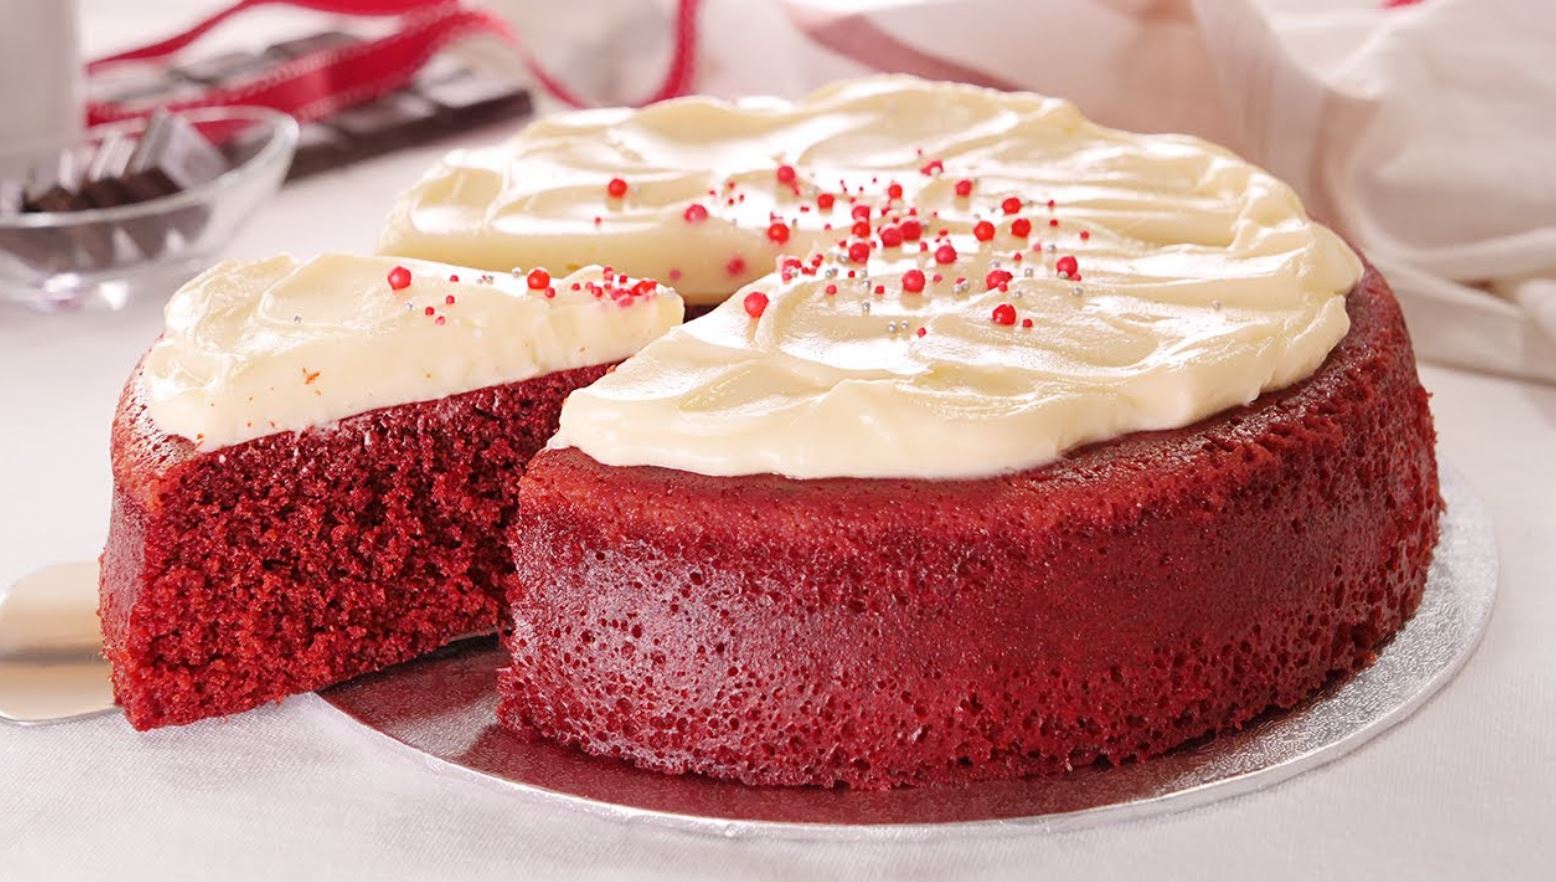 No Oven Red Velvet Cake